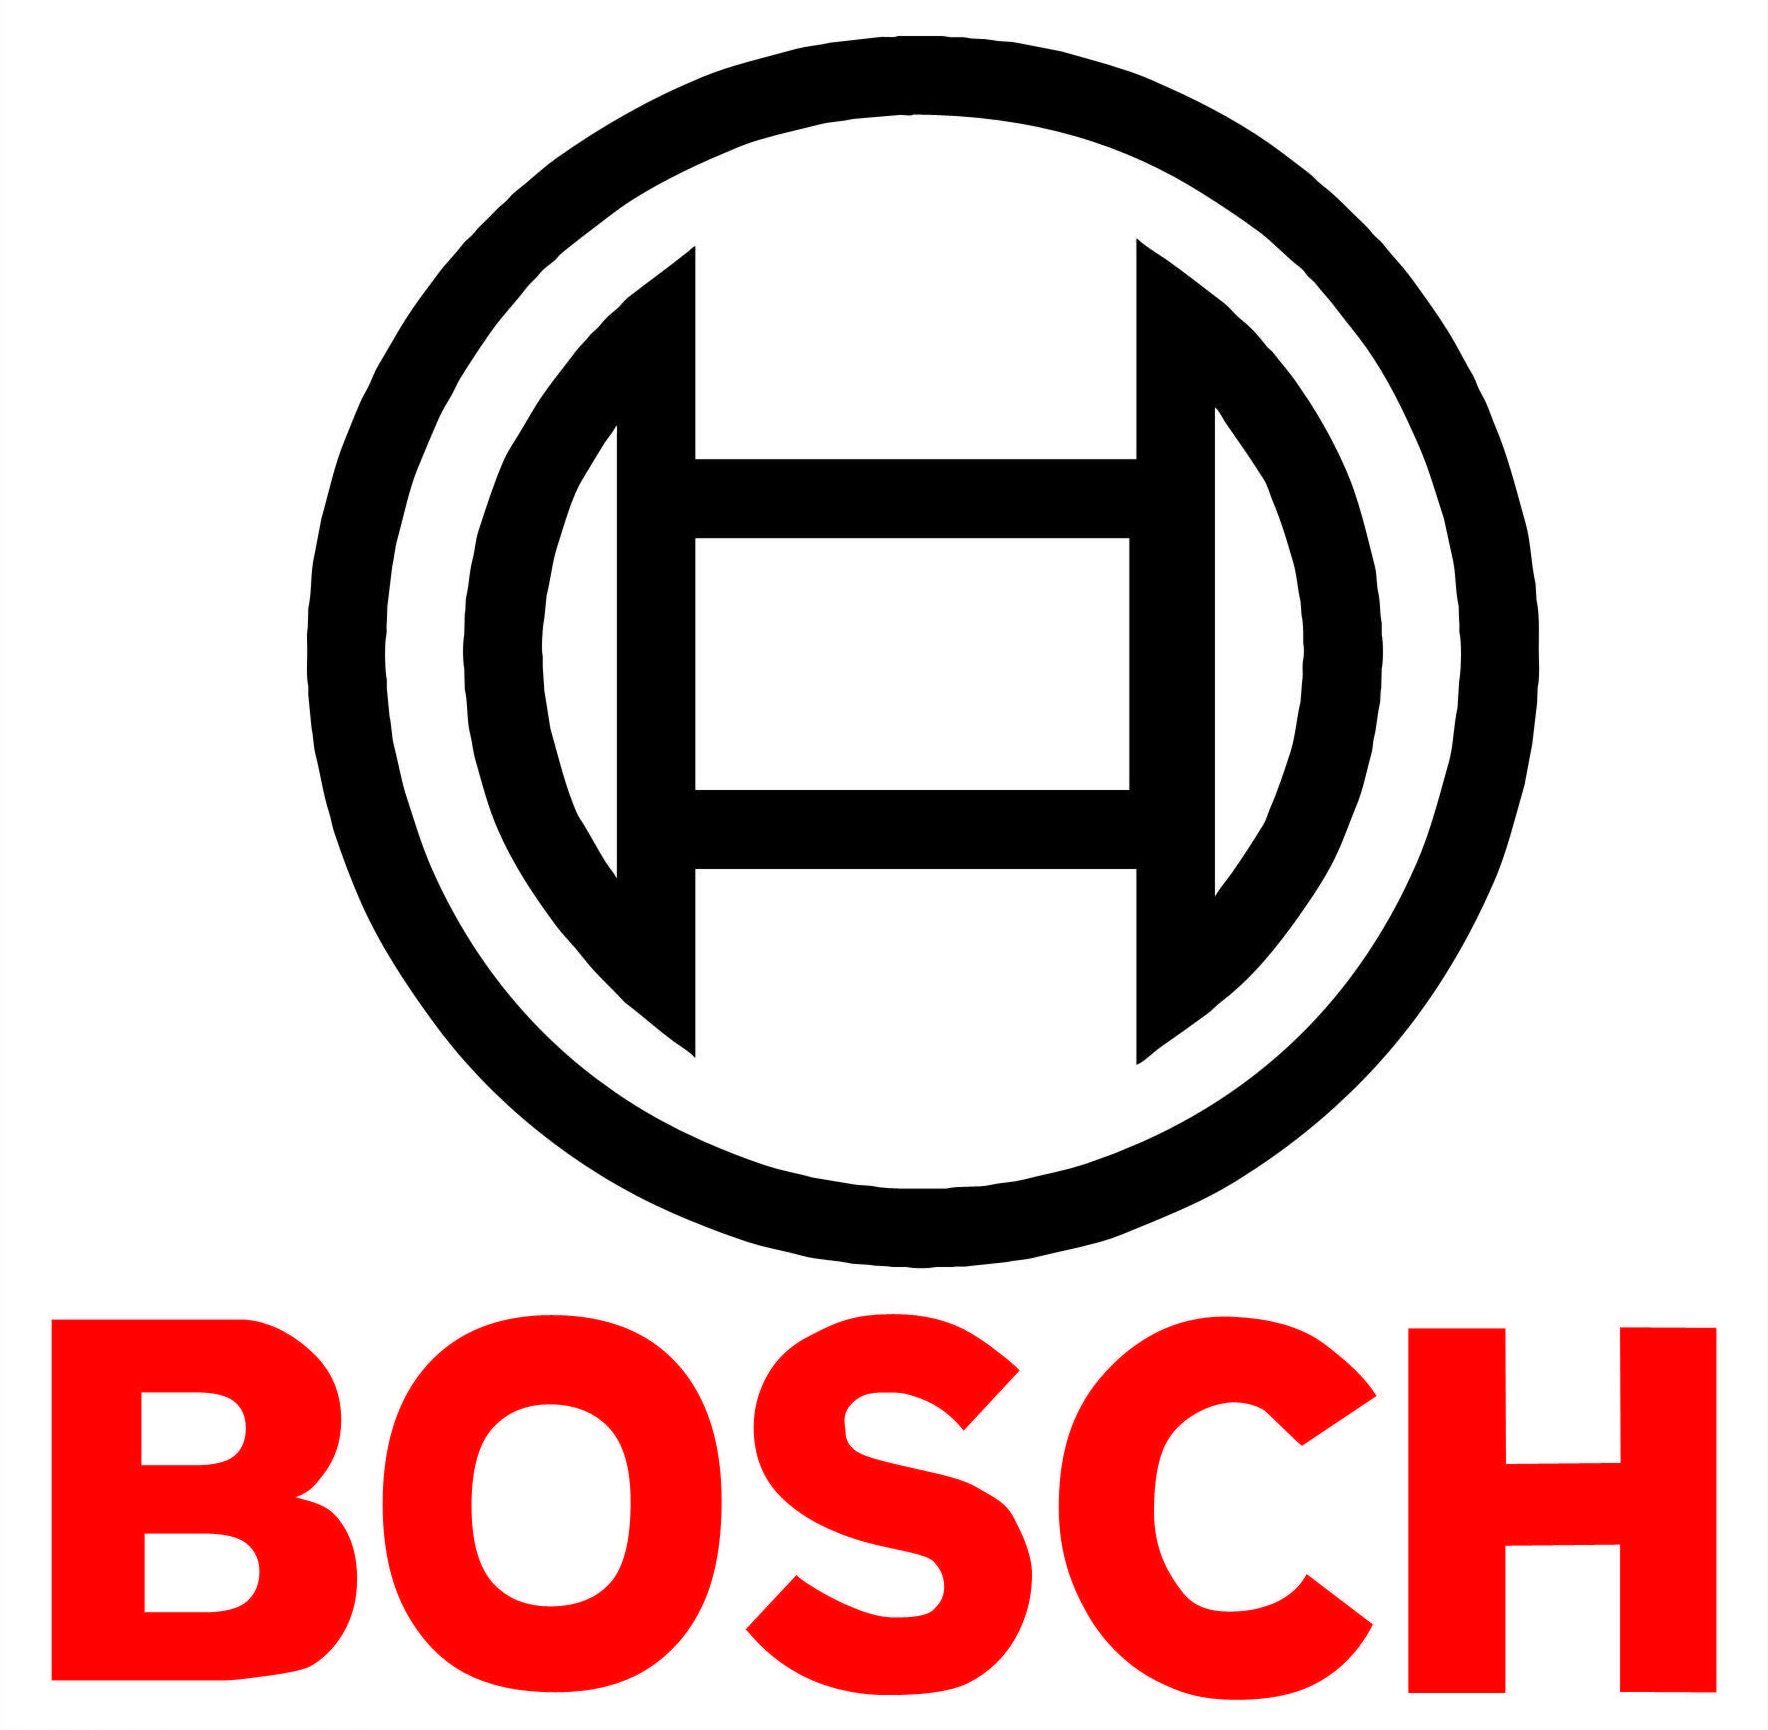 Bosch-logo-3D-4130282299.jpg